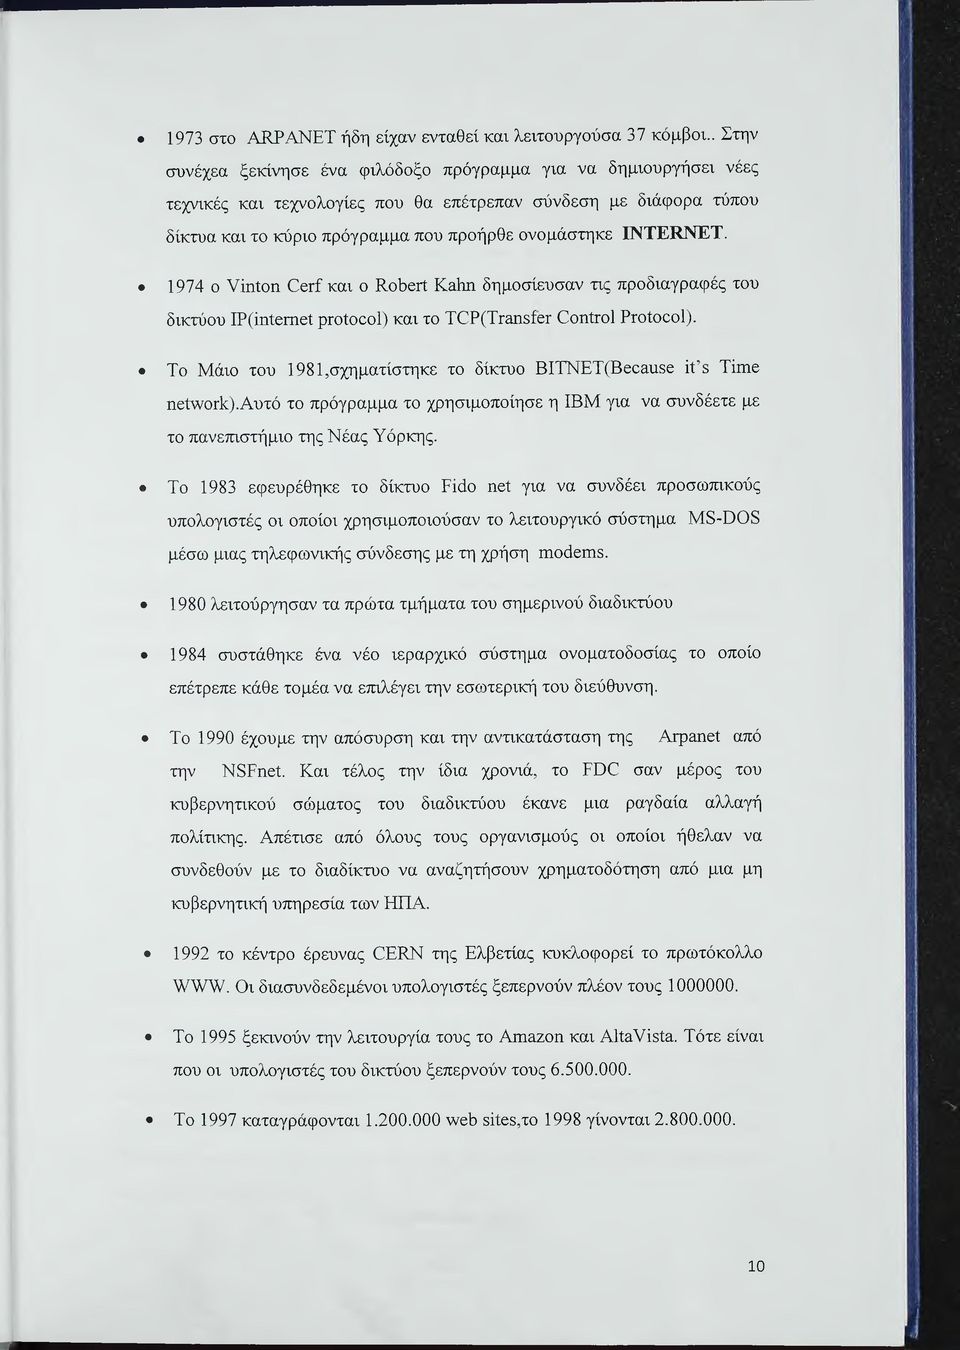 1974 ο νίηΐοη Οετί και ο Κούετί Καίιη δημοσίευσαν τις προδιαγραφές του δικτύου ΙΡ(1ηί0Γηεί ρτοΐοεοί) και το ΤΟΡ(ΤΓ3ΐΐ5ίεΓ Οοηίτοί Ρτοΐοεοί).